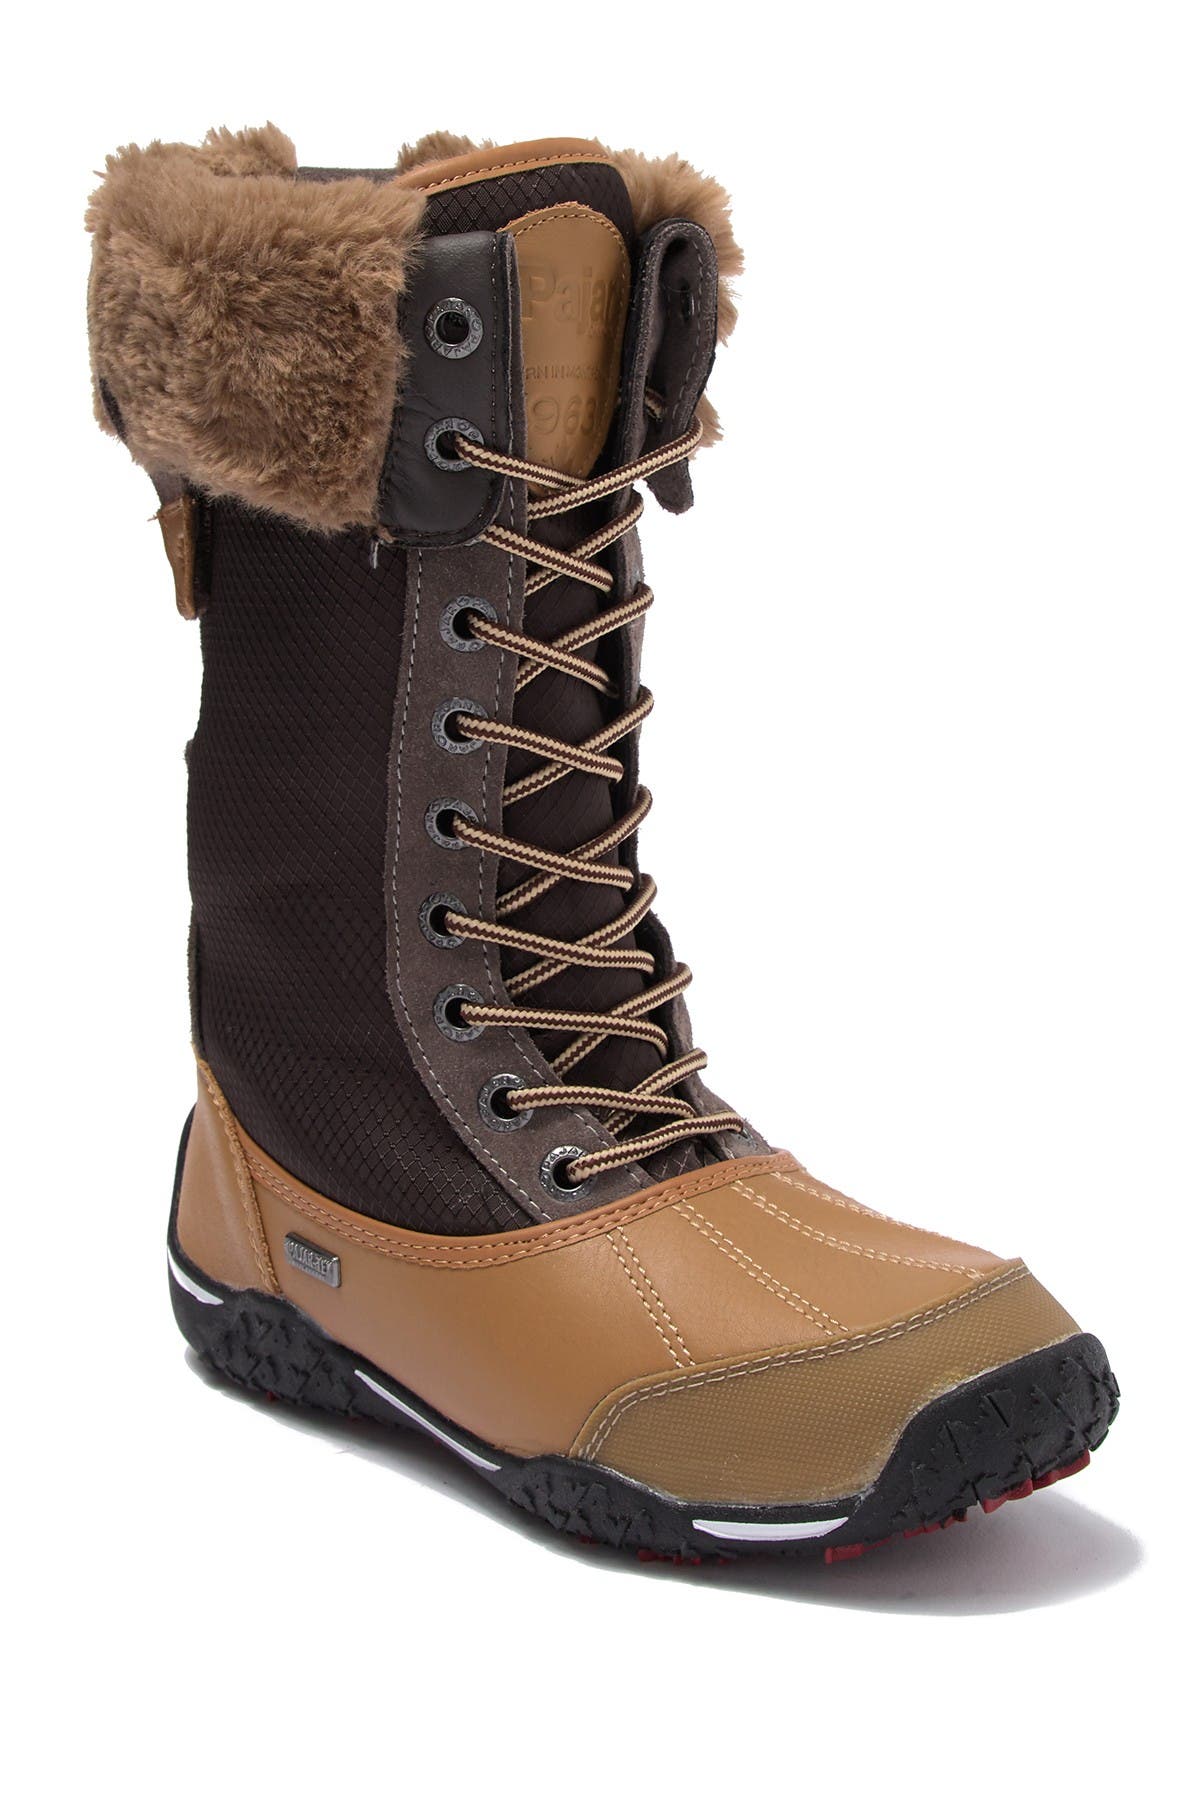 fur cuff boots